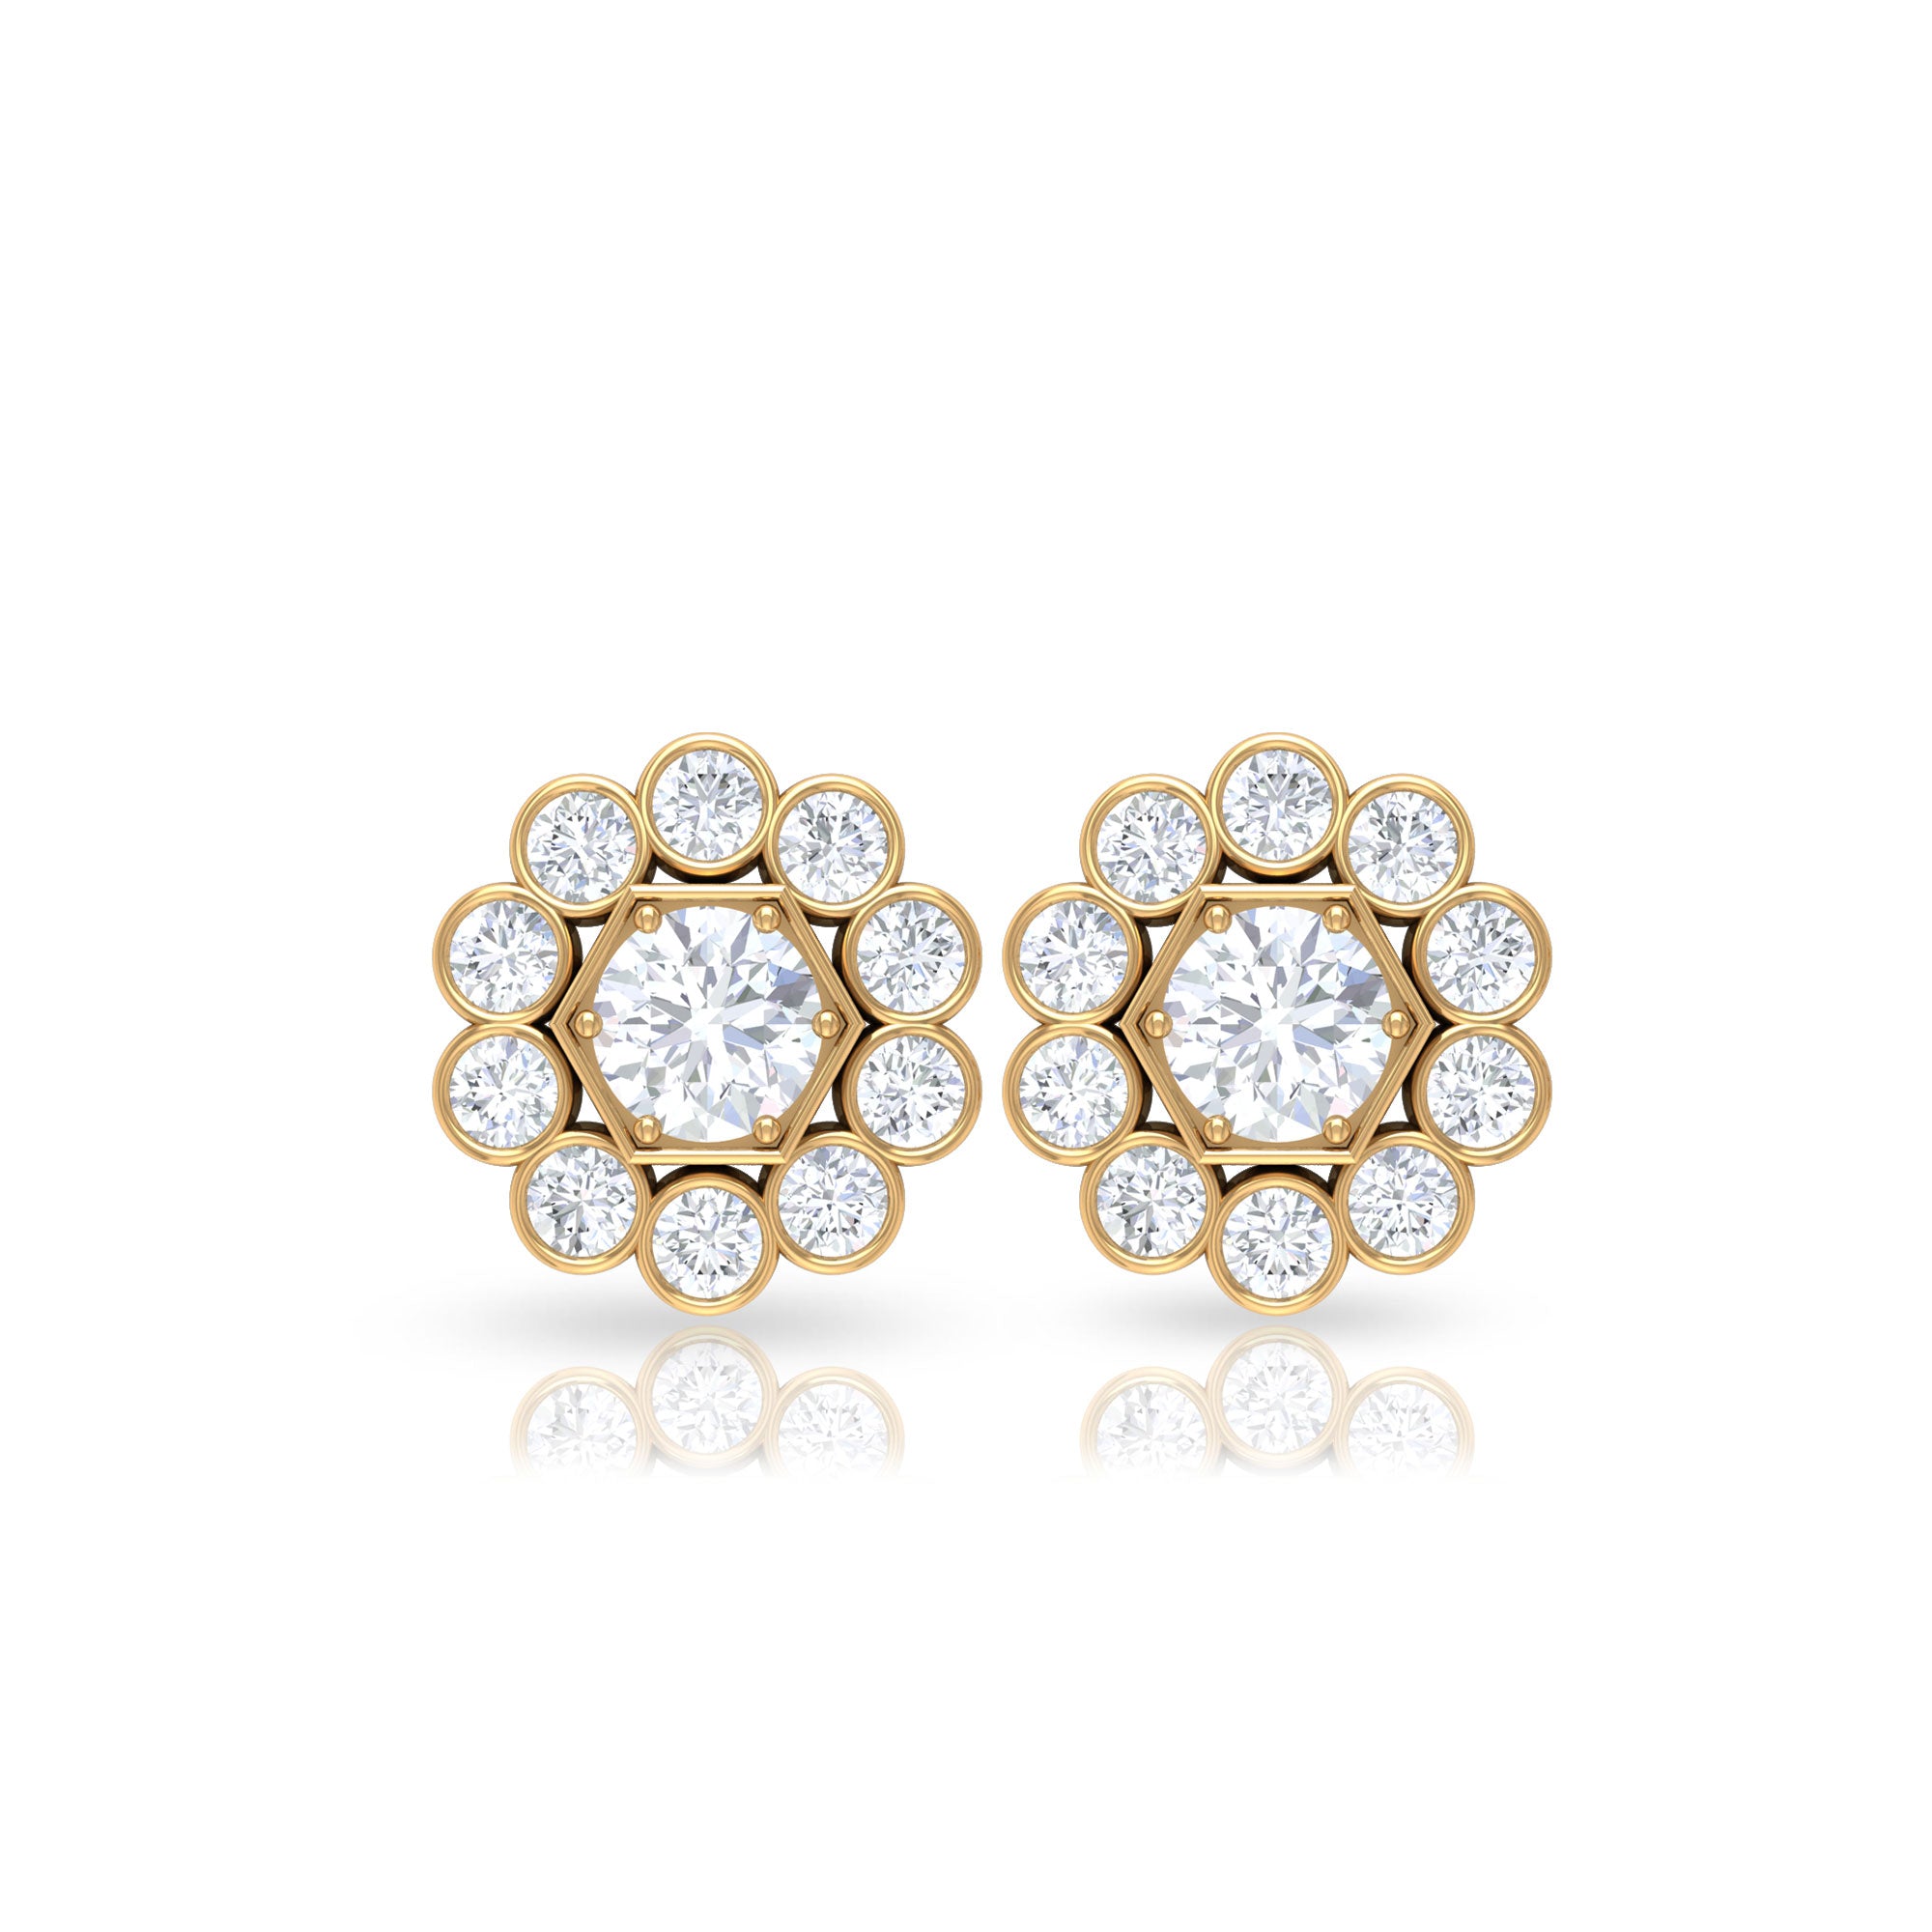 1.25 CT Zircon Gold Stud Earrings with Halo Zircon - ( AAAA ) - Quality - Rosec Jewels